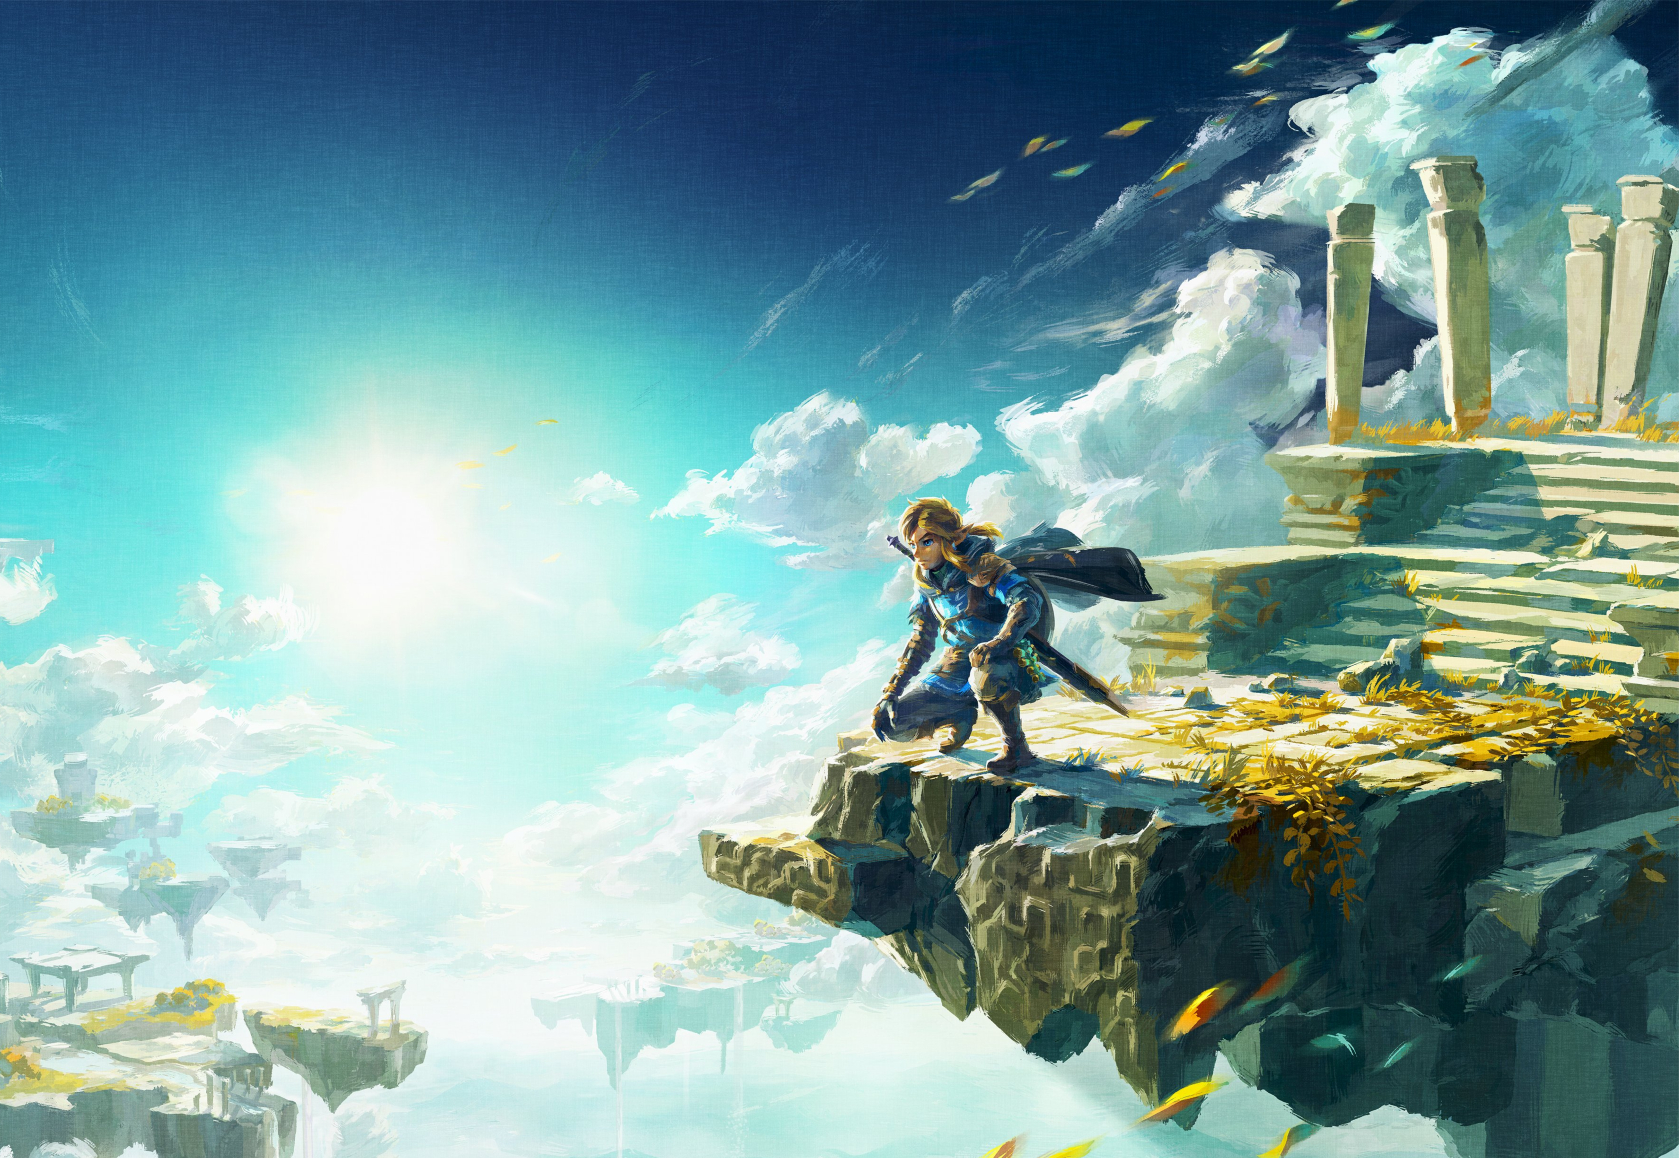 The Legend of Zelda: Breath of the Wild – Zelda Launch Date Announced